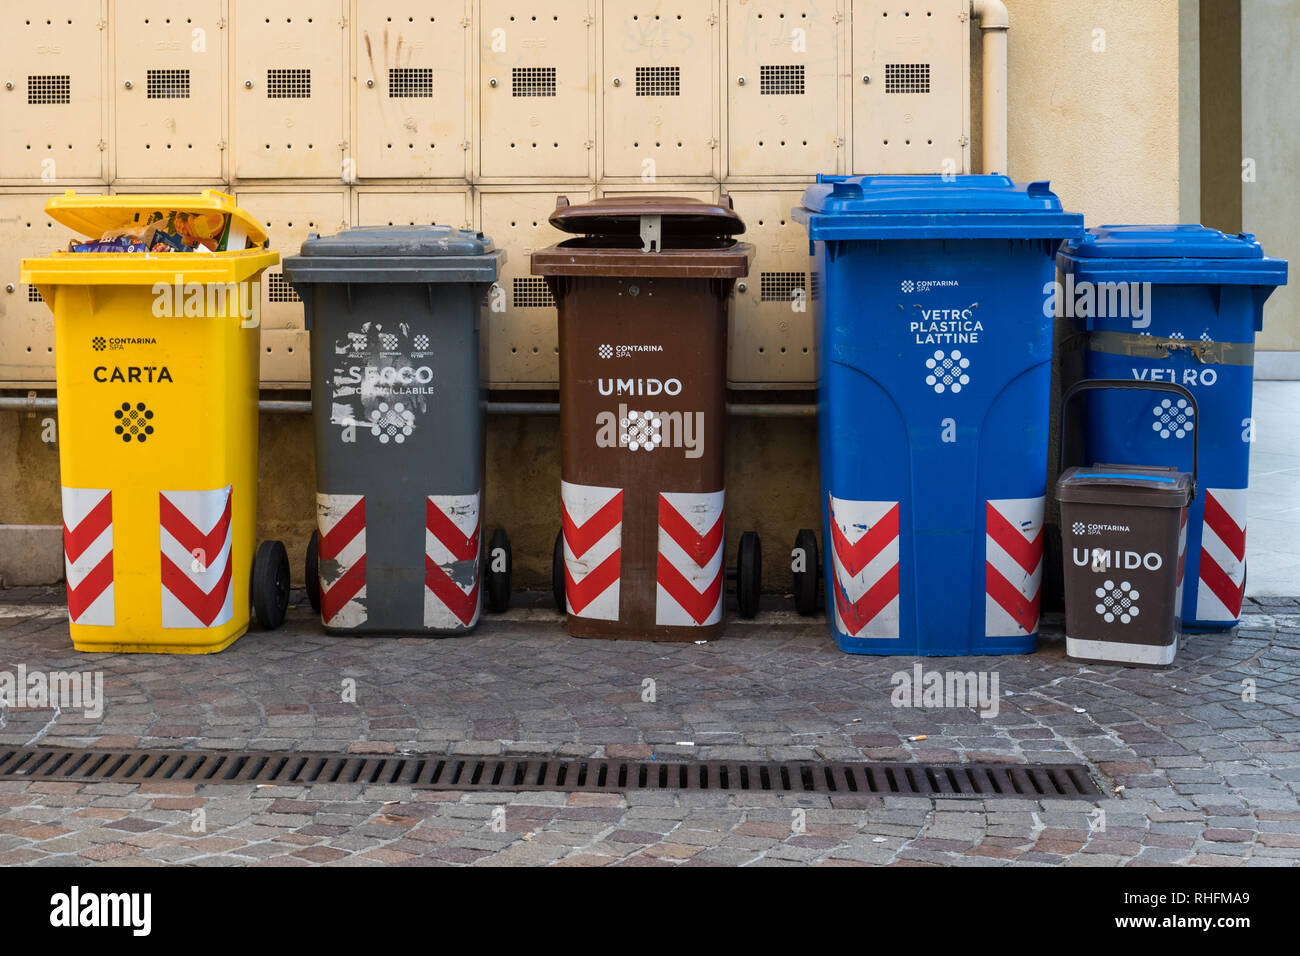 Recycling bins italy immagini e fotografie stock ad alta risoluzione - Alamy